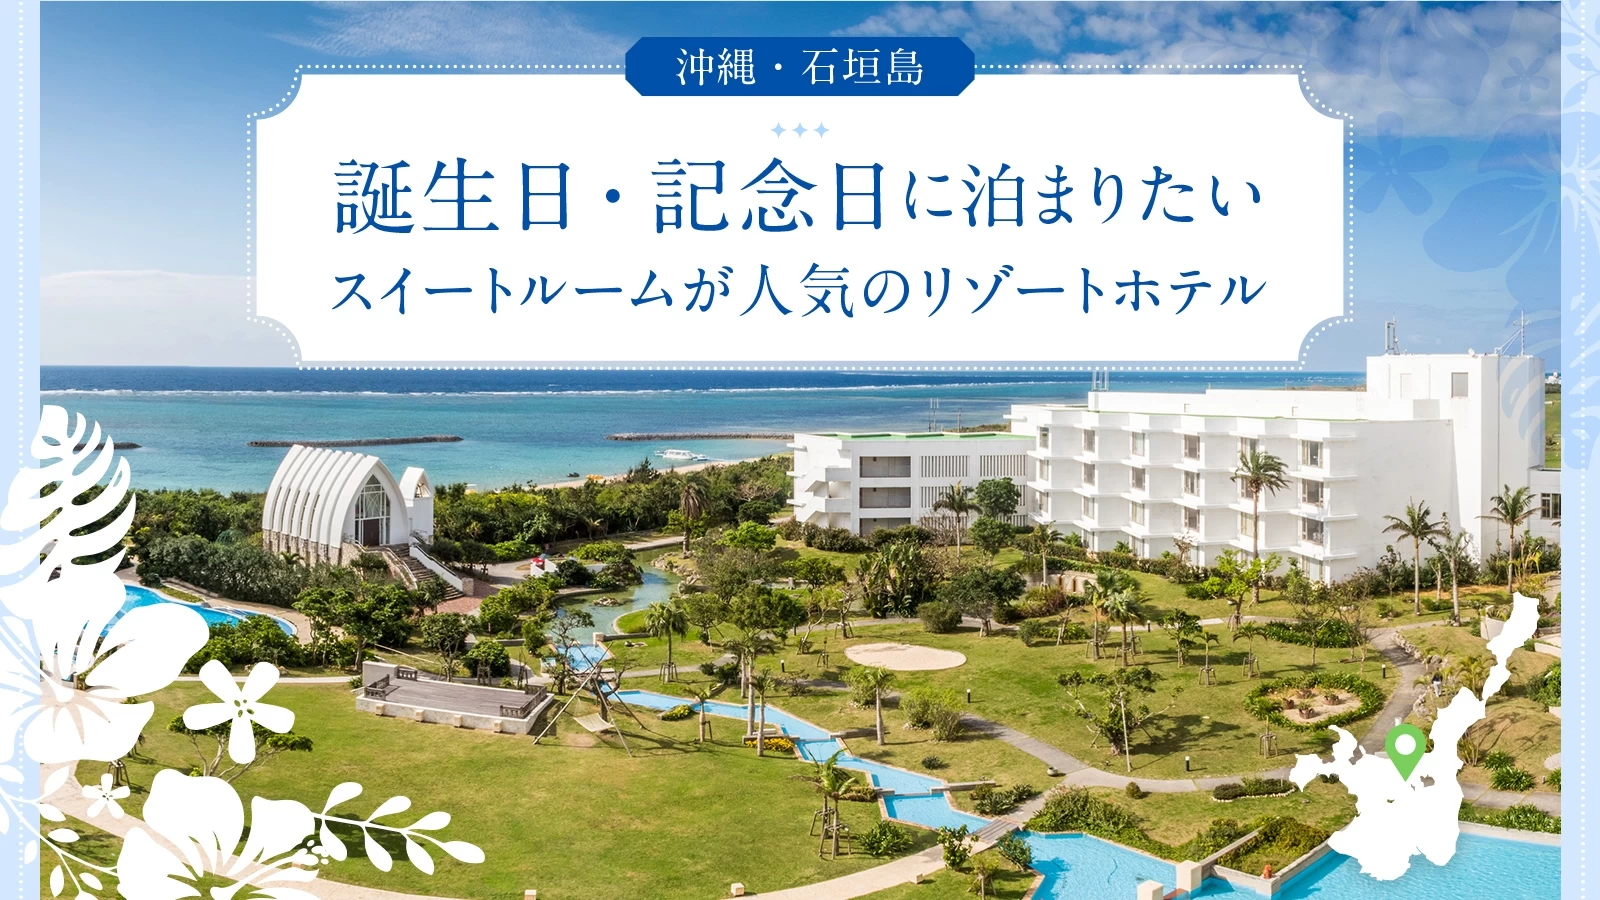 【沖縄・石垣島】誕生日・記念日に泊まりたいスイートルームが人気のリゾートホテル5選